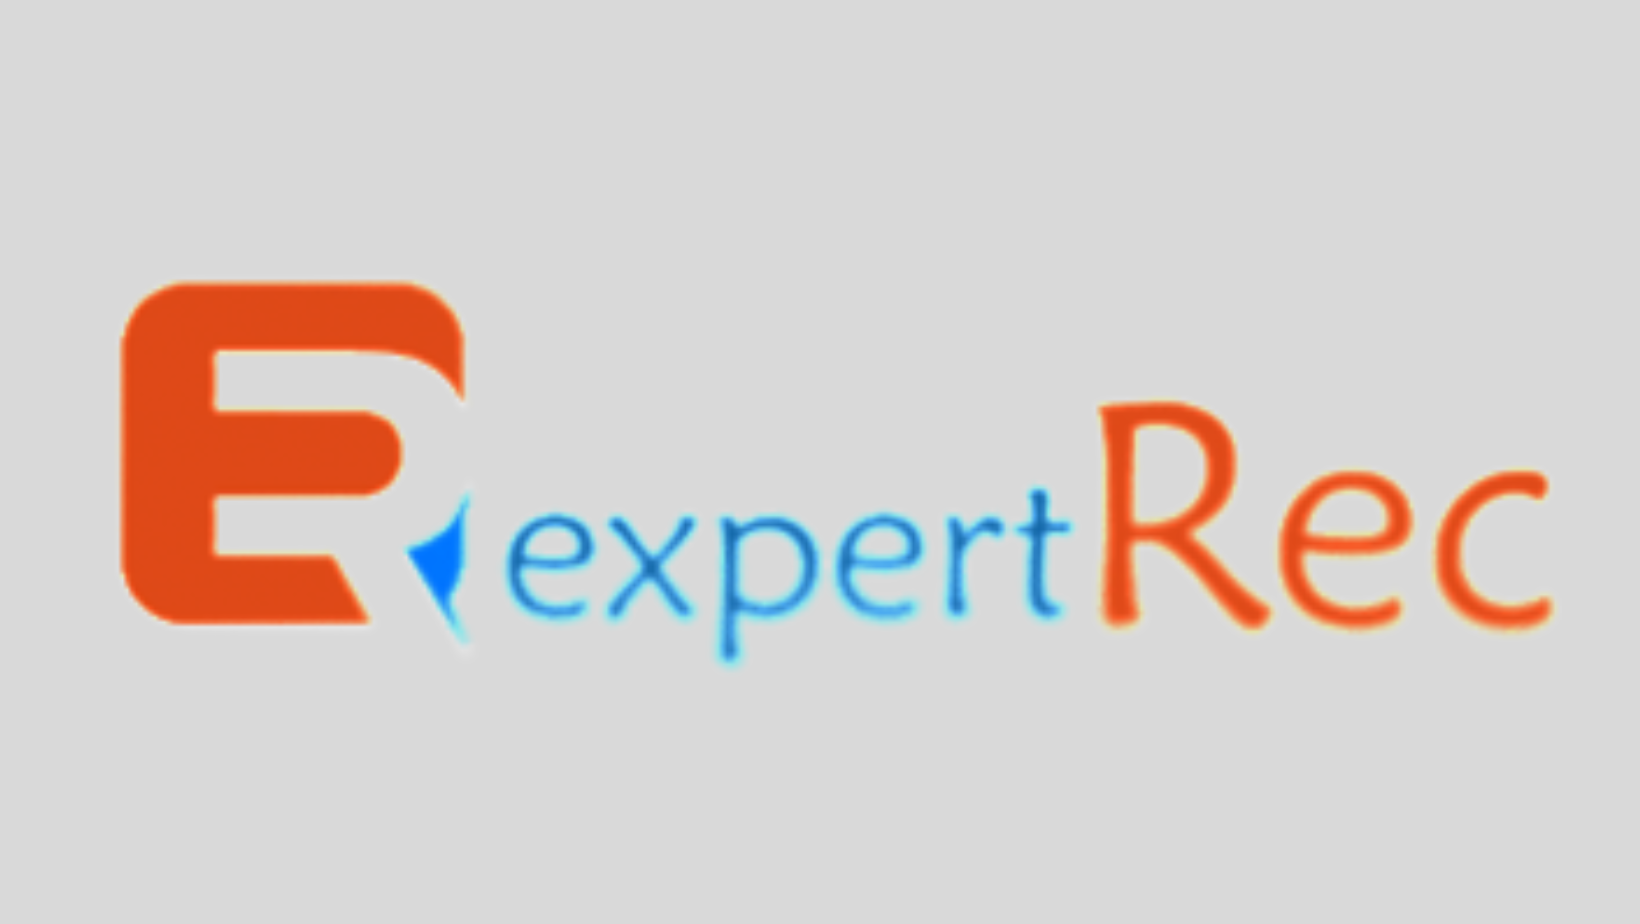 ExpertRec